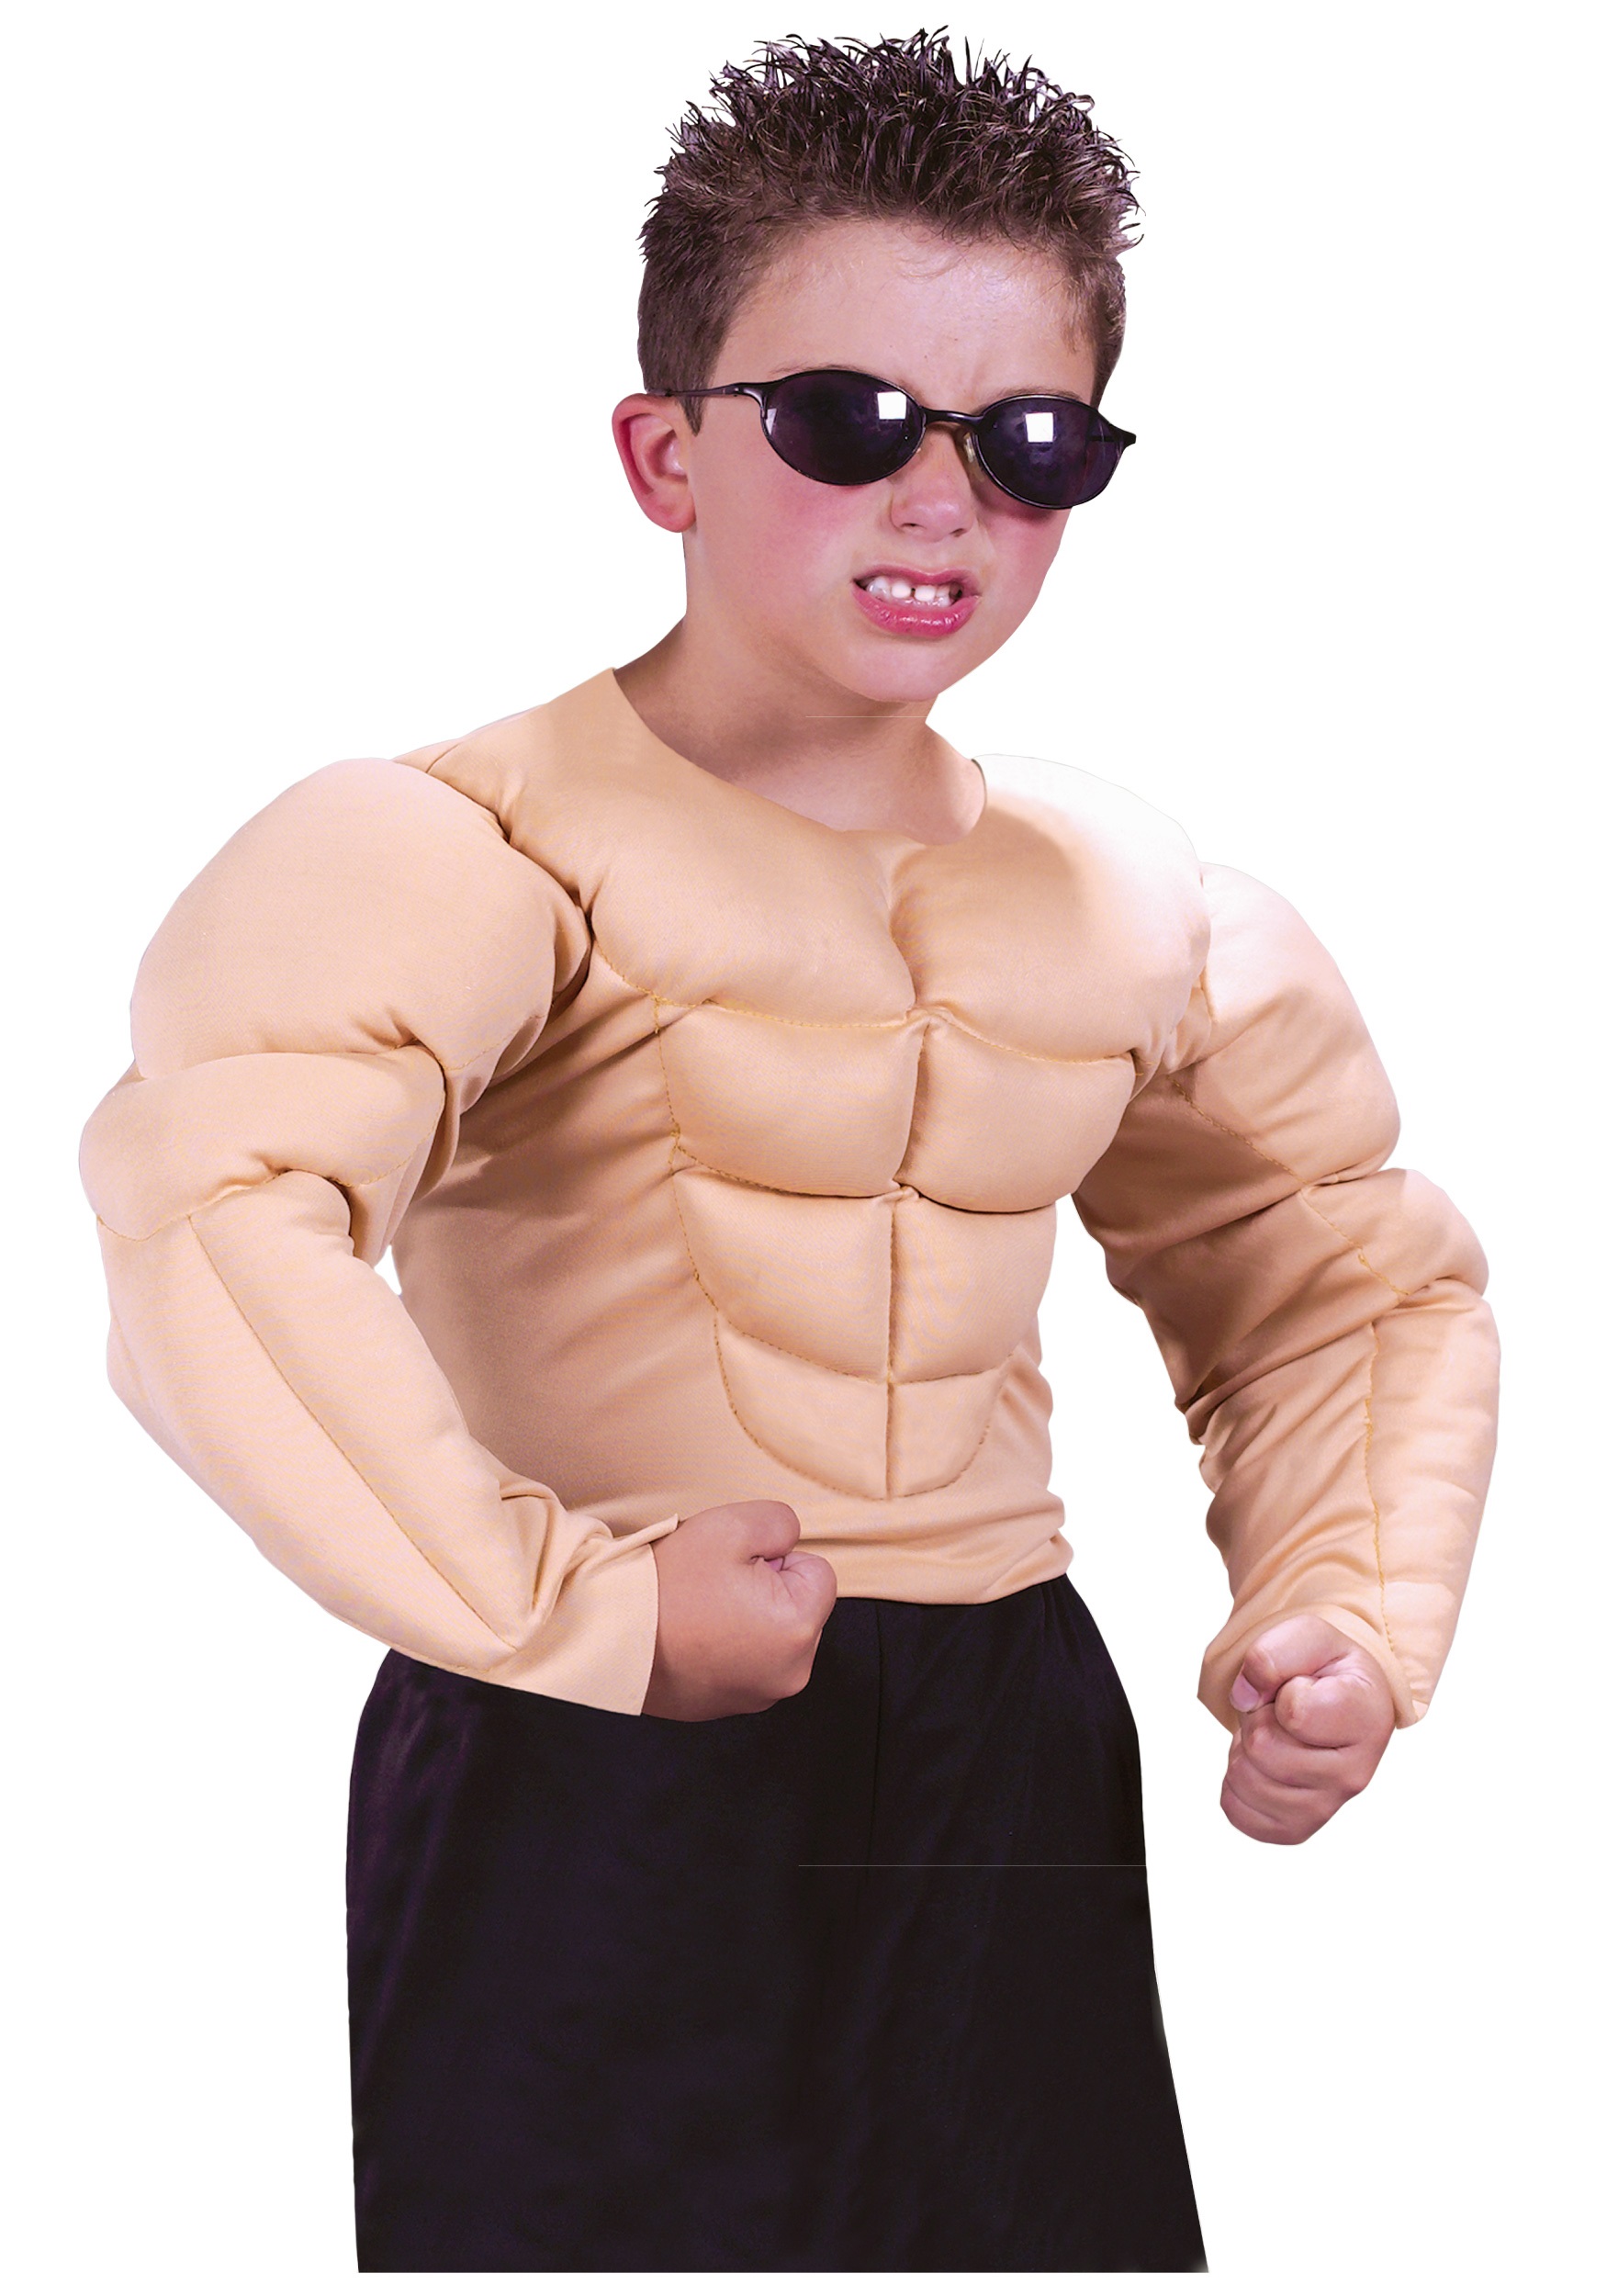 Boy big muscle